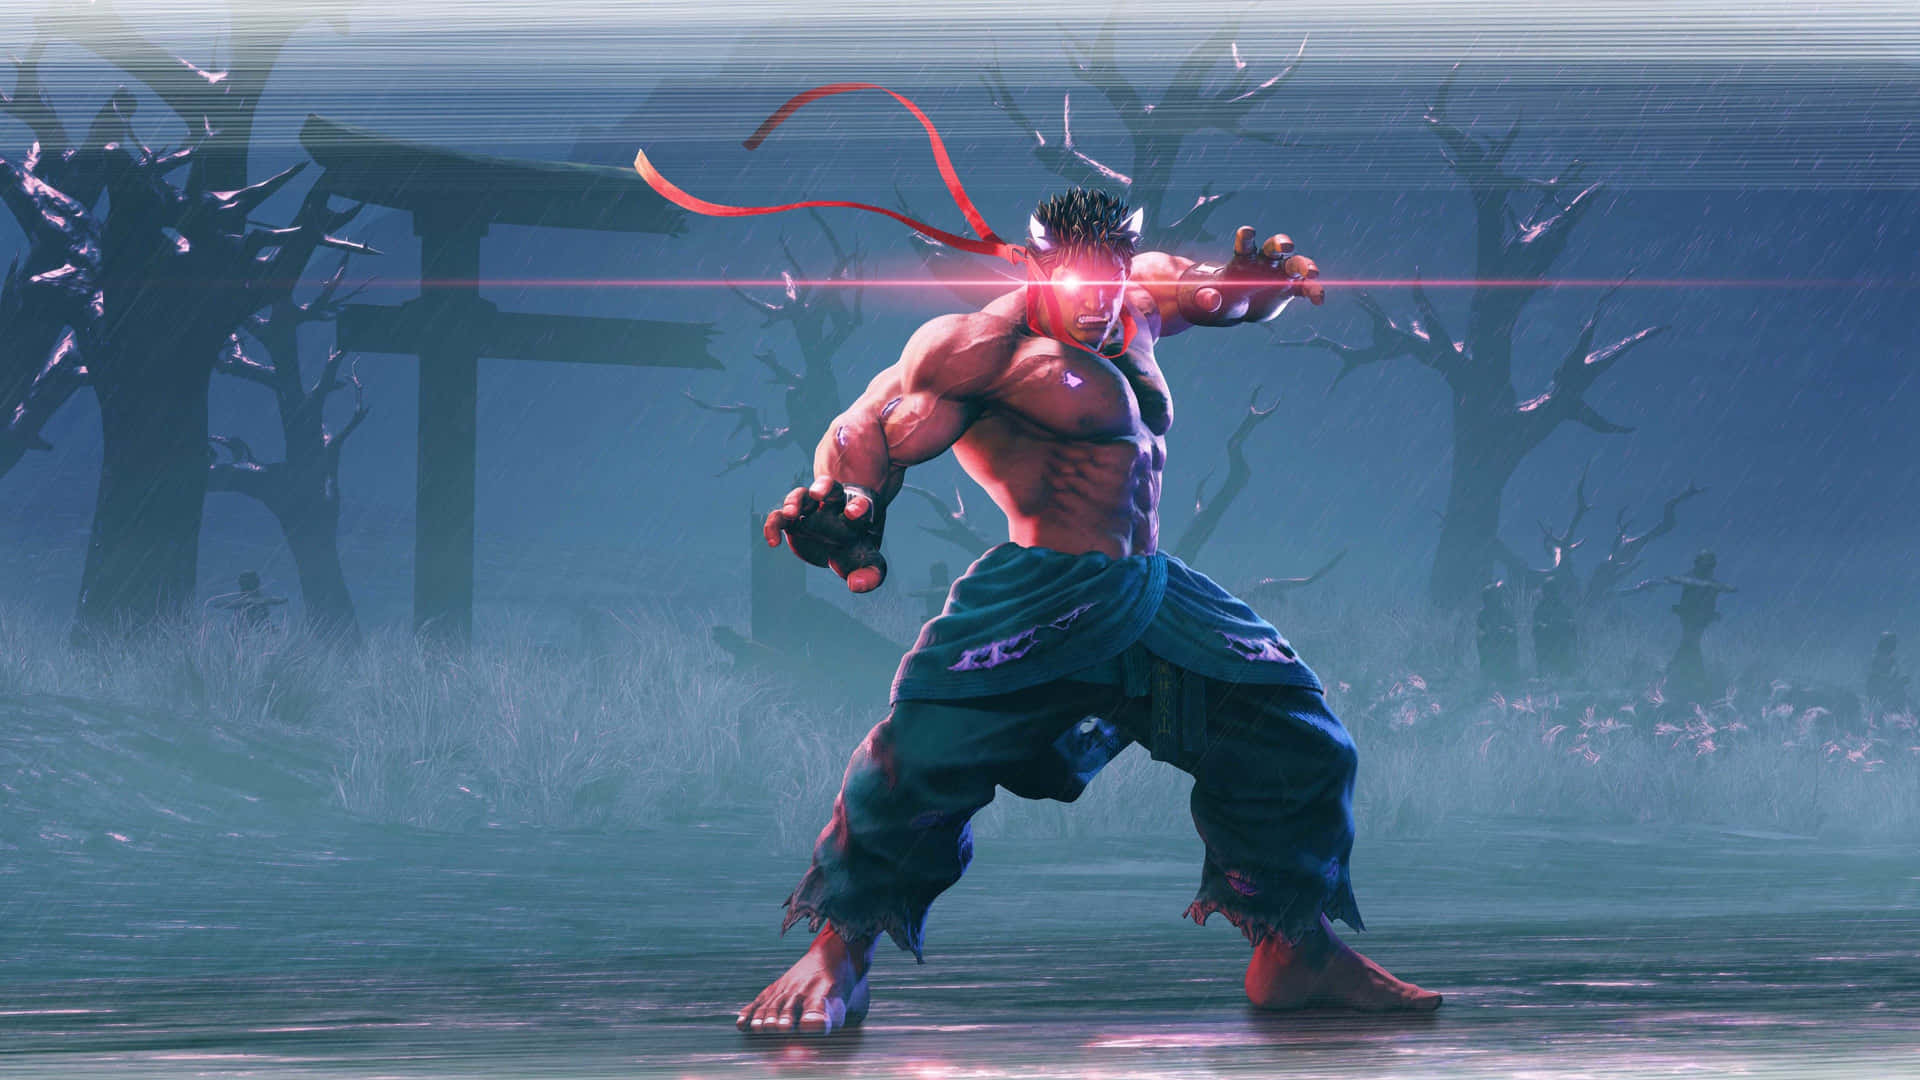 Personajescautivadores De Street Fighter En Acción. Fondo de pantalla